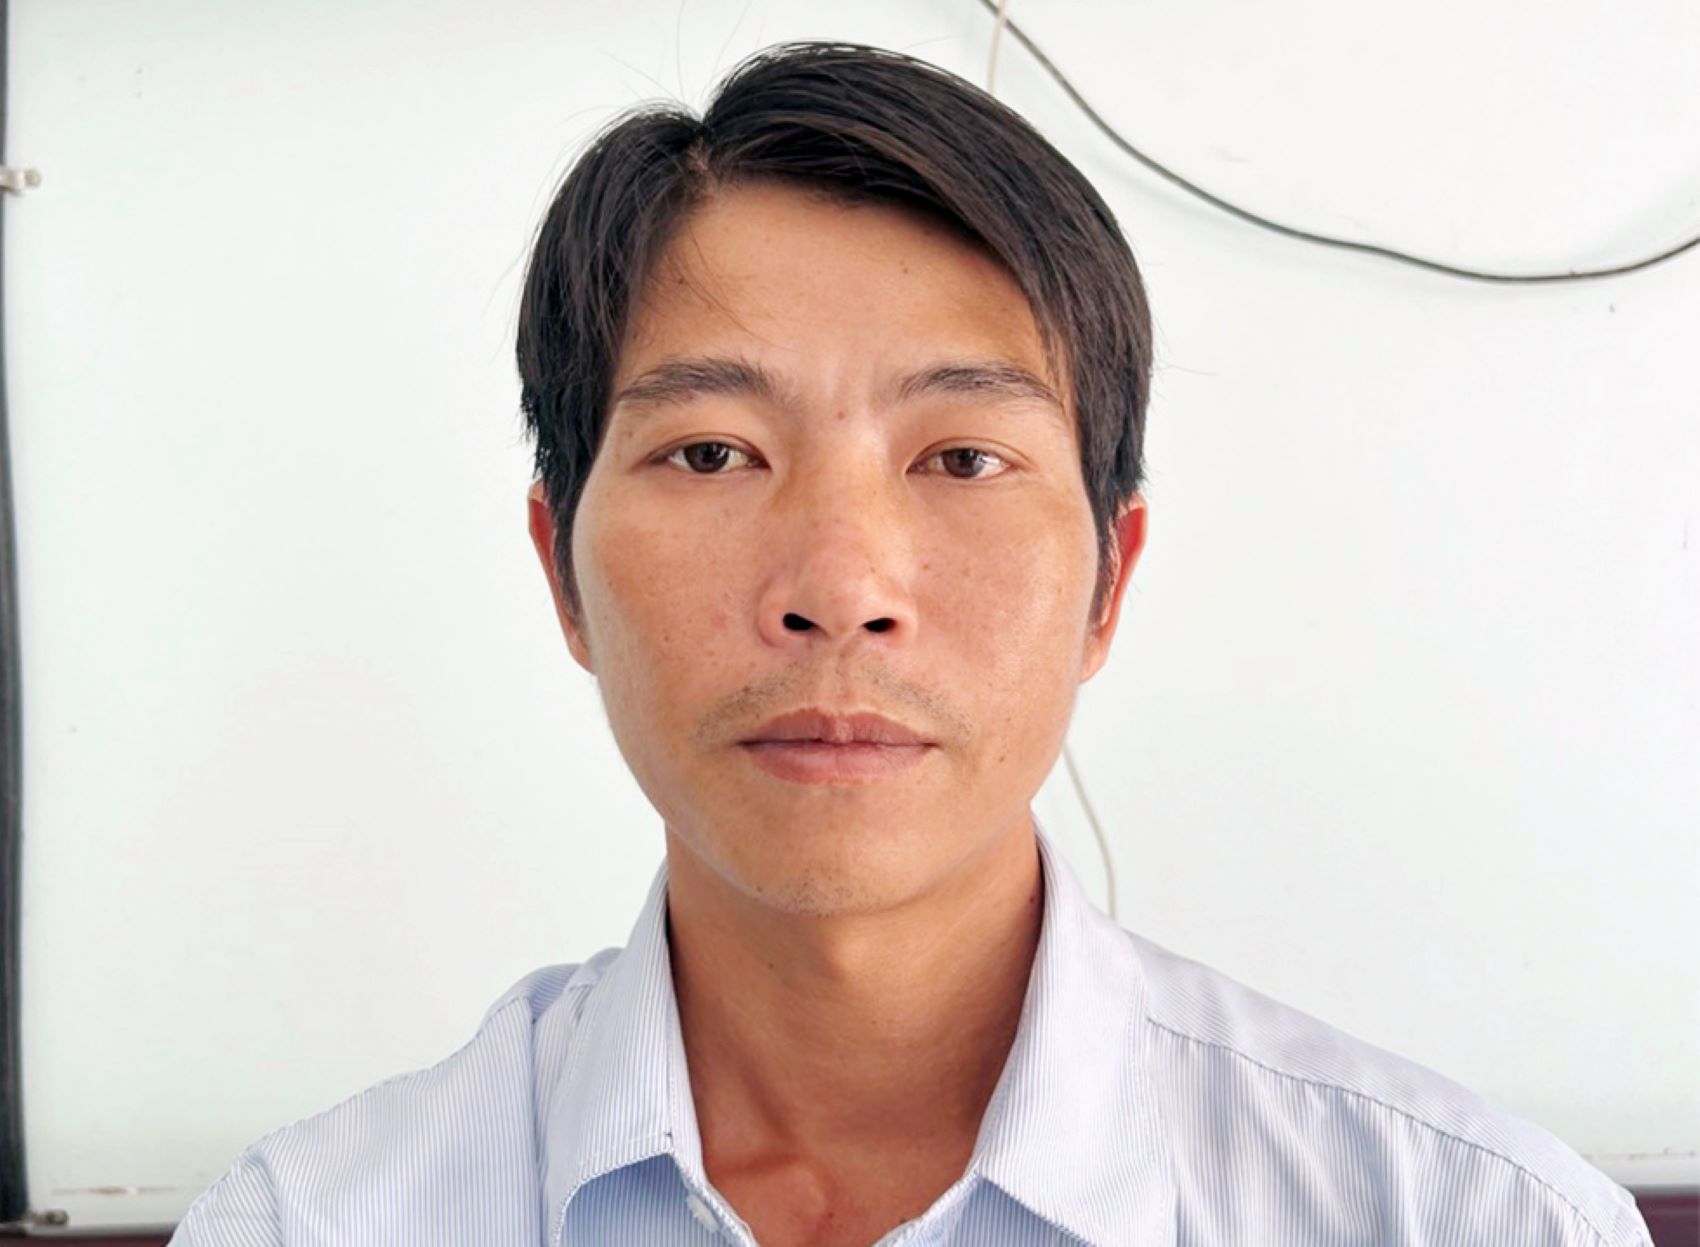 Công an tỉnh An Giang đang đề nghị Viện Kiểm sát cùng cấp truy tố Nguyễn Minh Tiến về tội giết người. Ảnh: Vũ Tiến